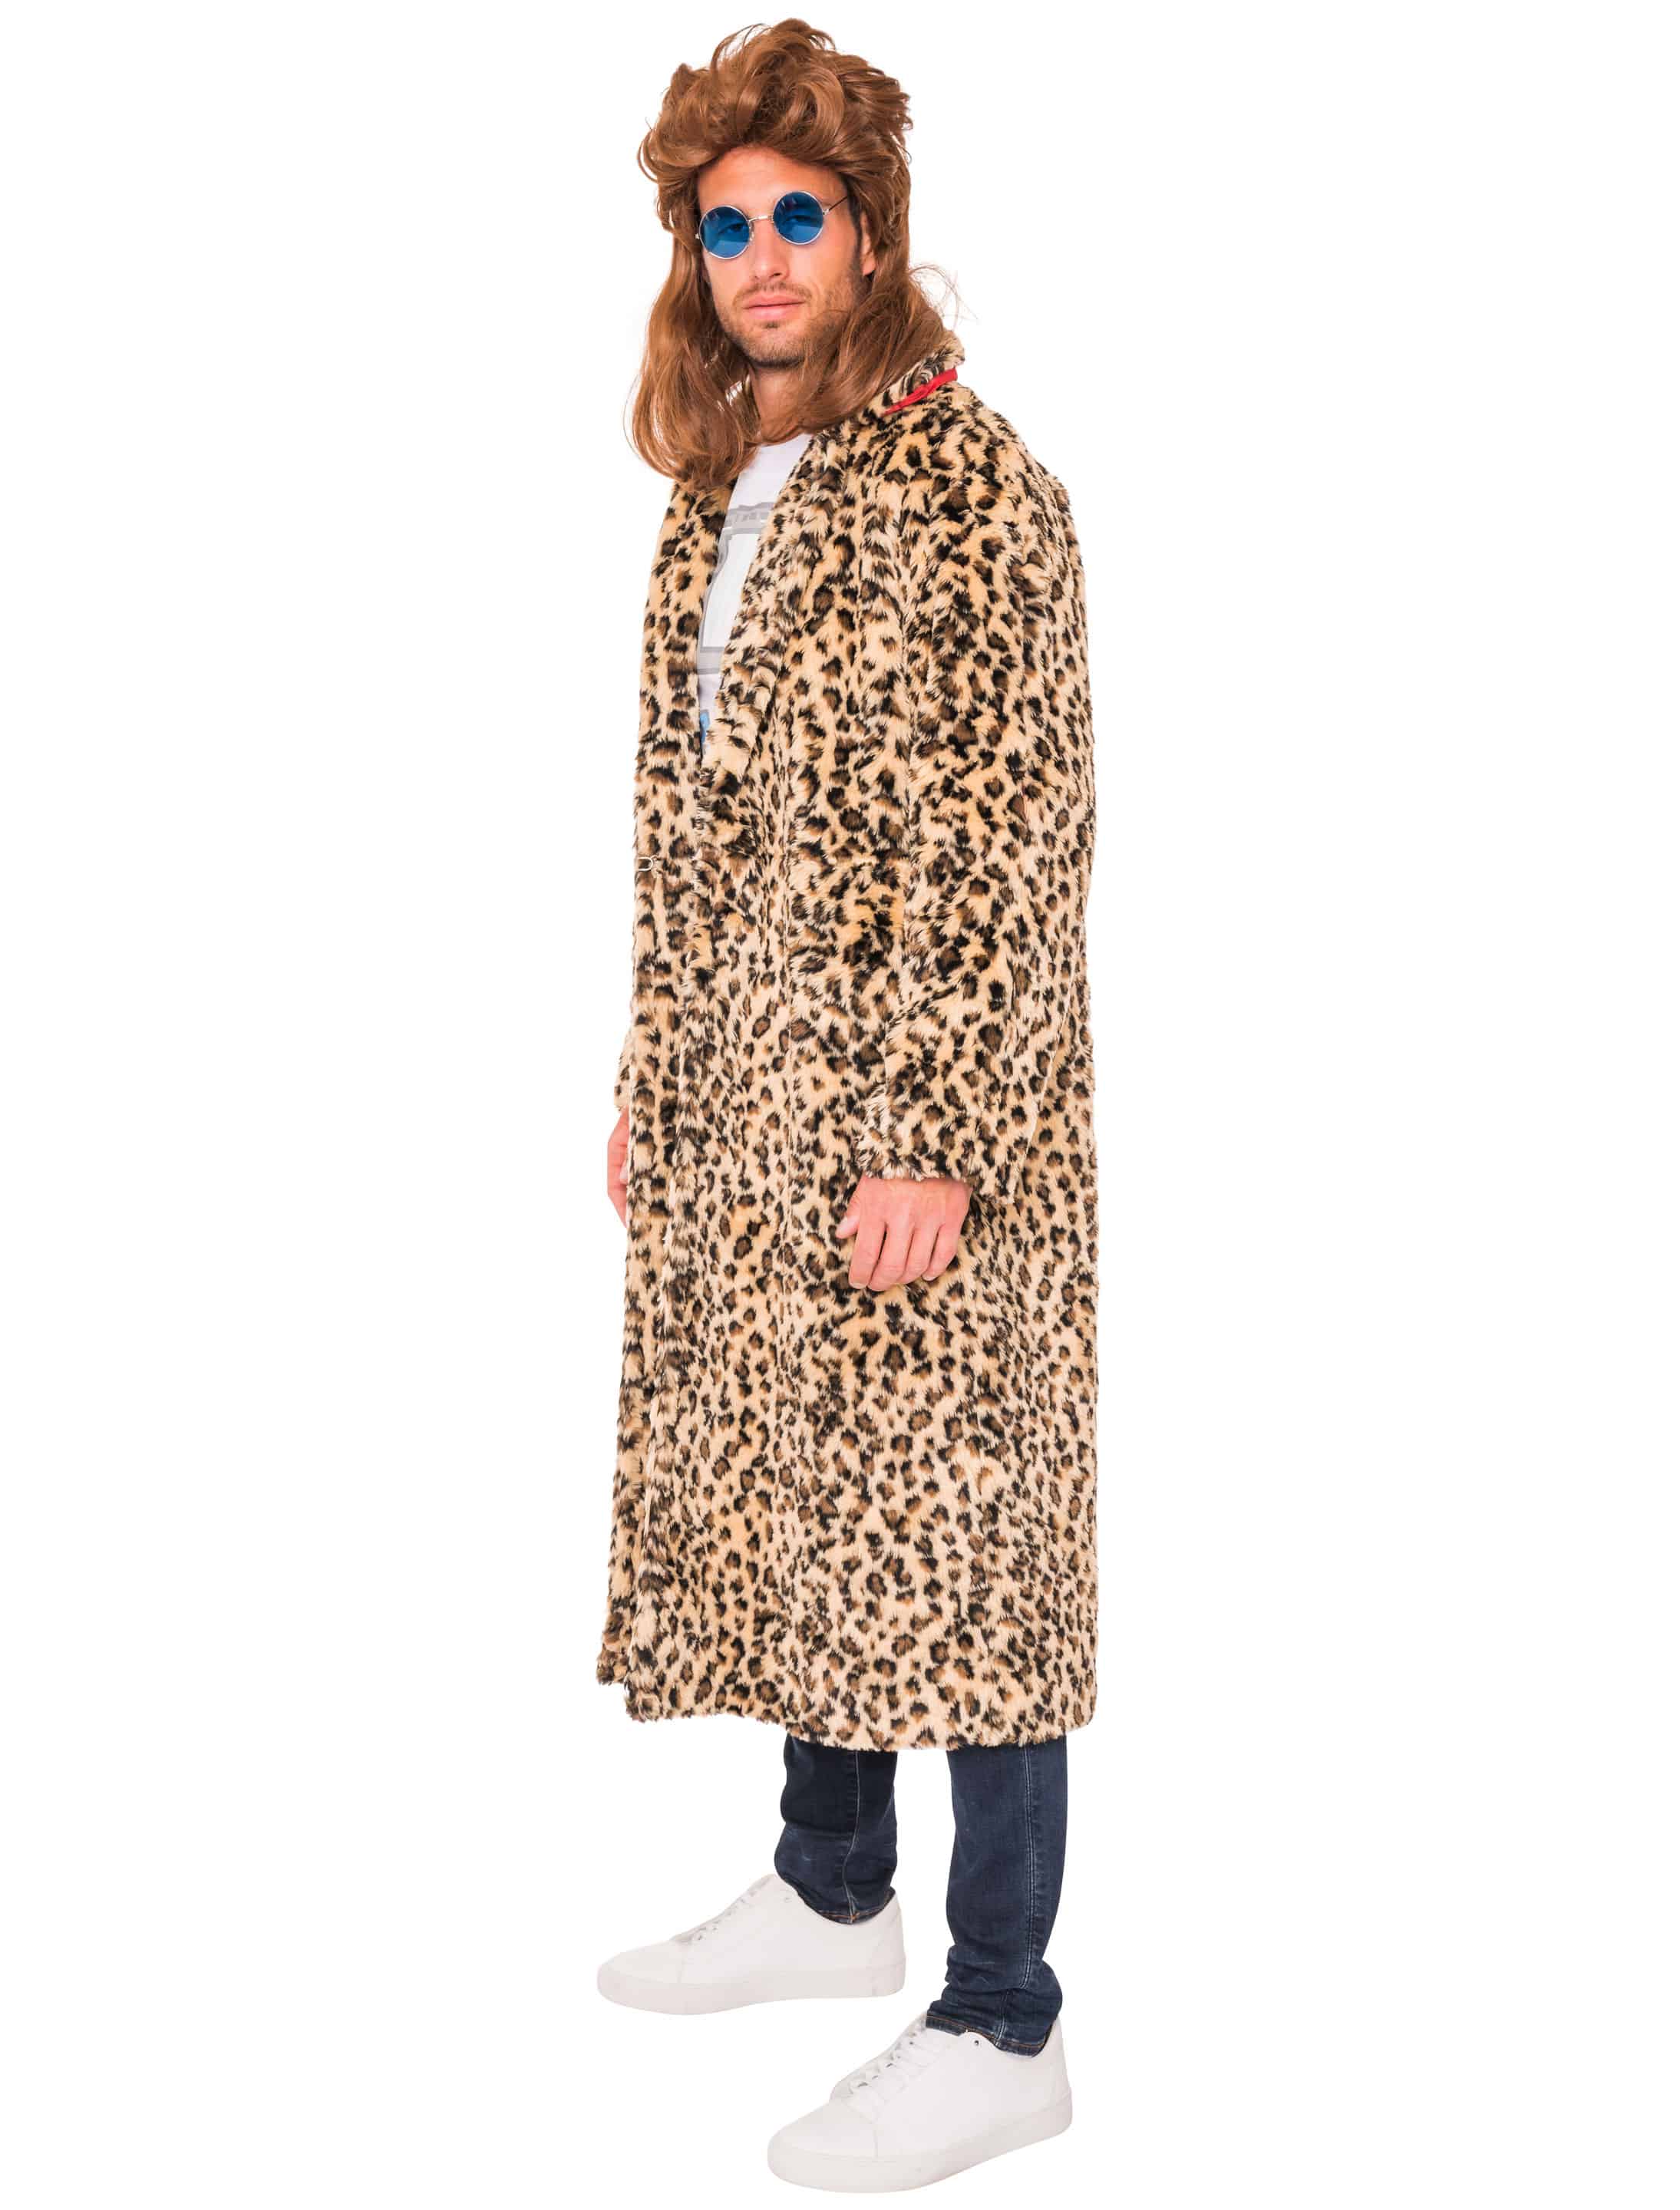 Mantel Leopardenmuster braun/schwarz L/XL